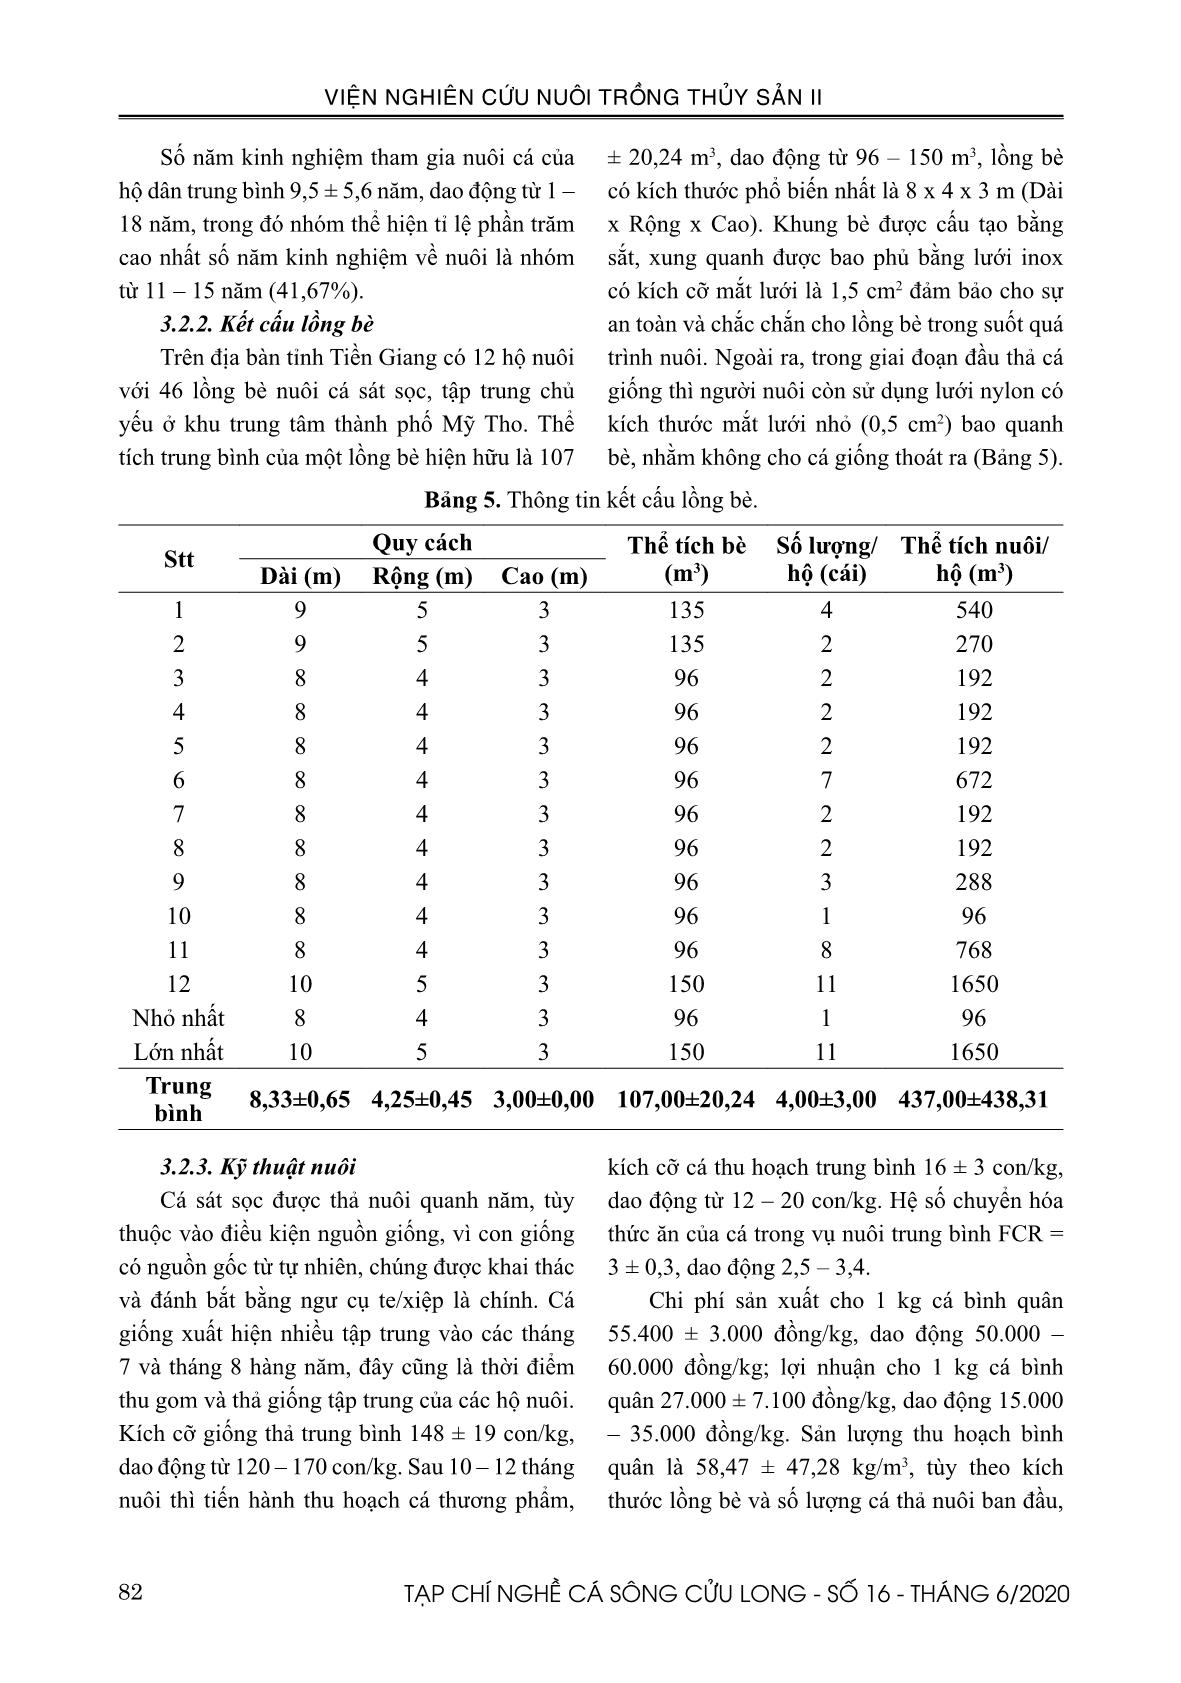 Hiện trạng khai thác và nuôi trồng cá sát sọc Pangasius macronema Bleeker, 1850 ở tỉnh Tiền Giang trang 8